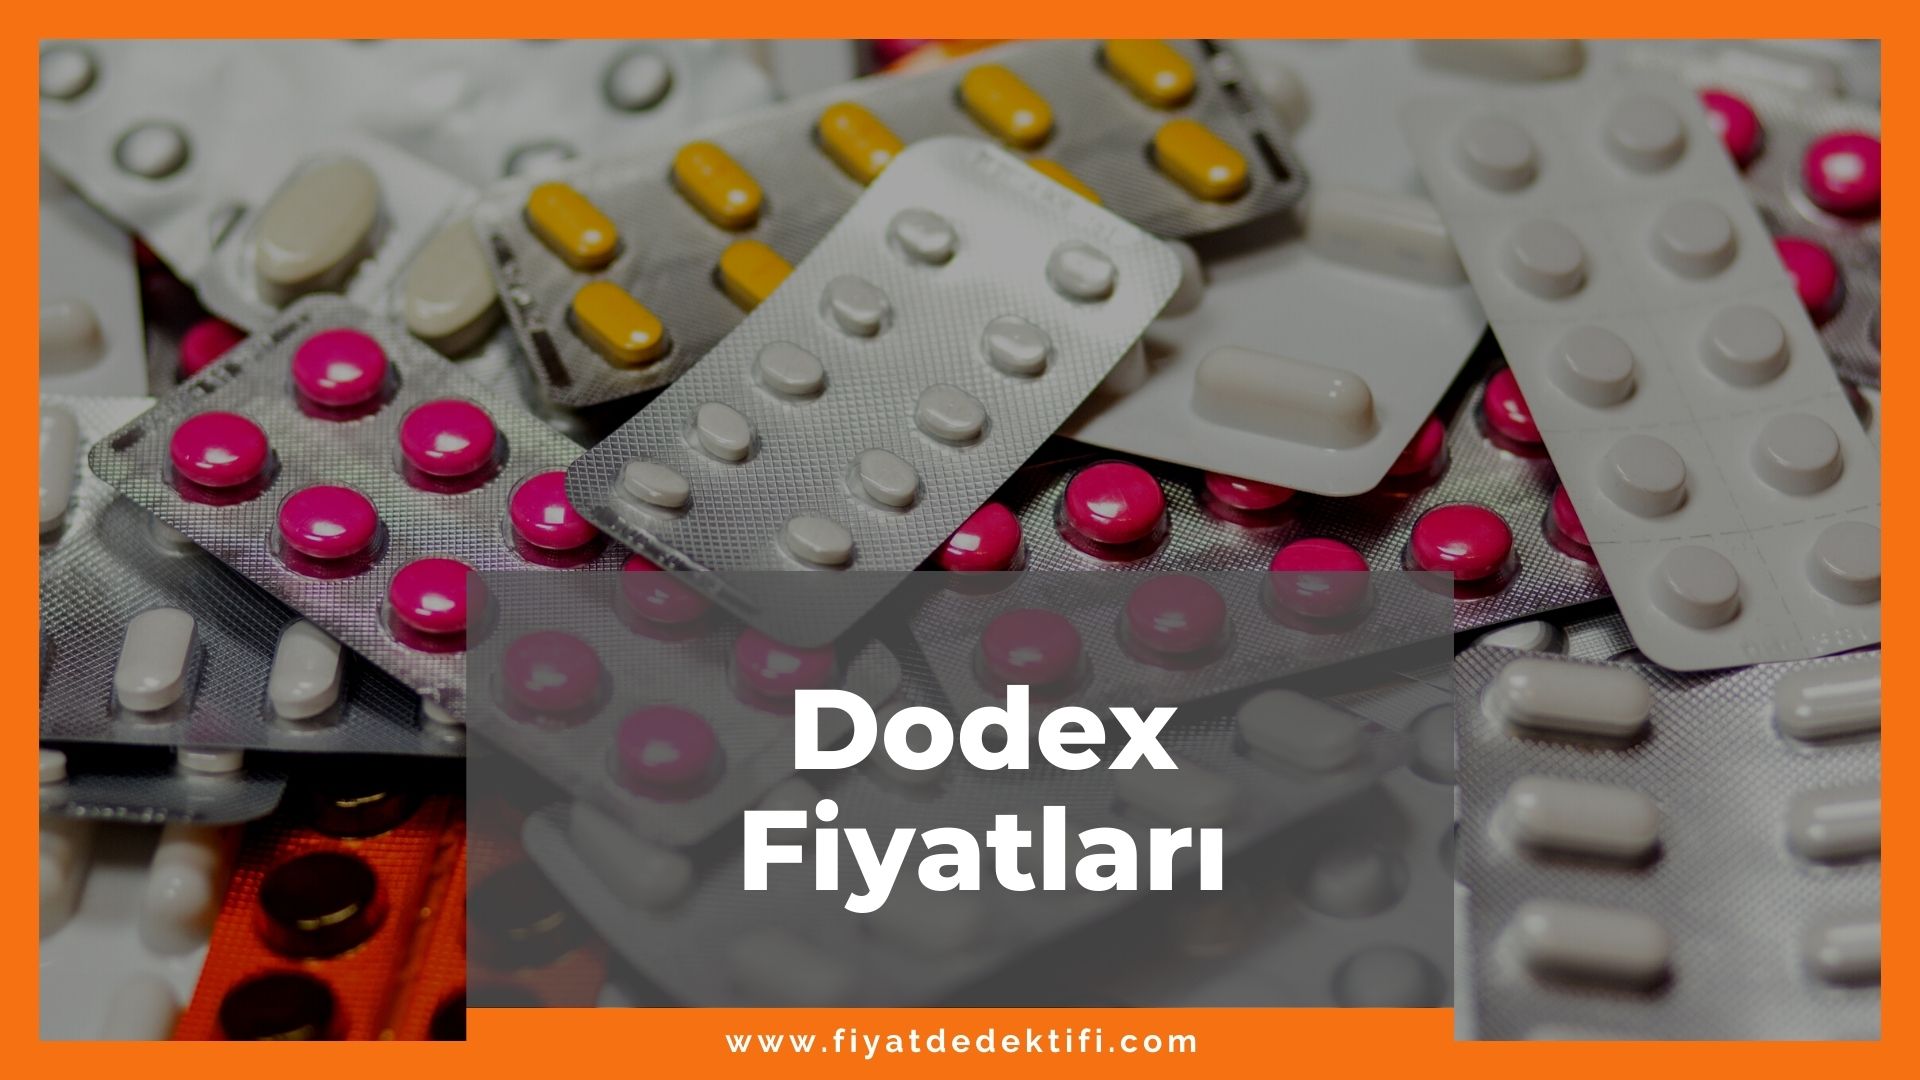 Dodex Fiyat 2021, Dodex Ampul Fiyatı, Dodex B12 Fiyatı, dodex ampul zamlandı mı, dodex b12 zamlı fiyatı ne kadar oldu